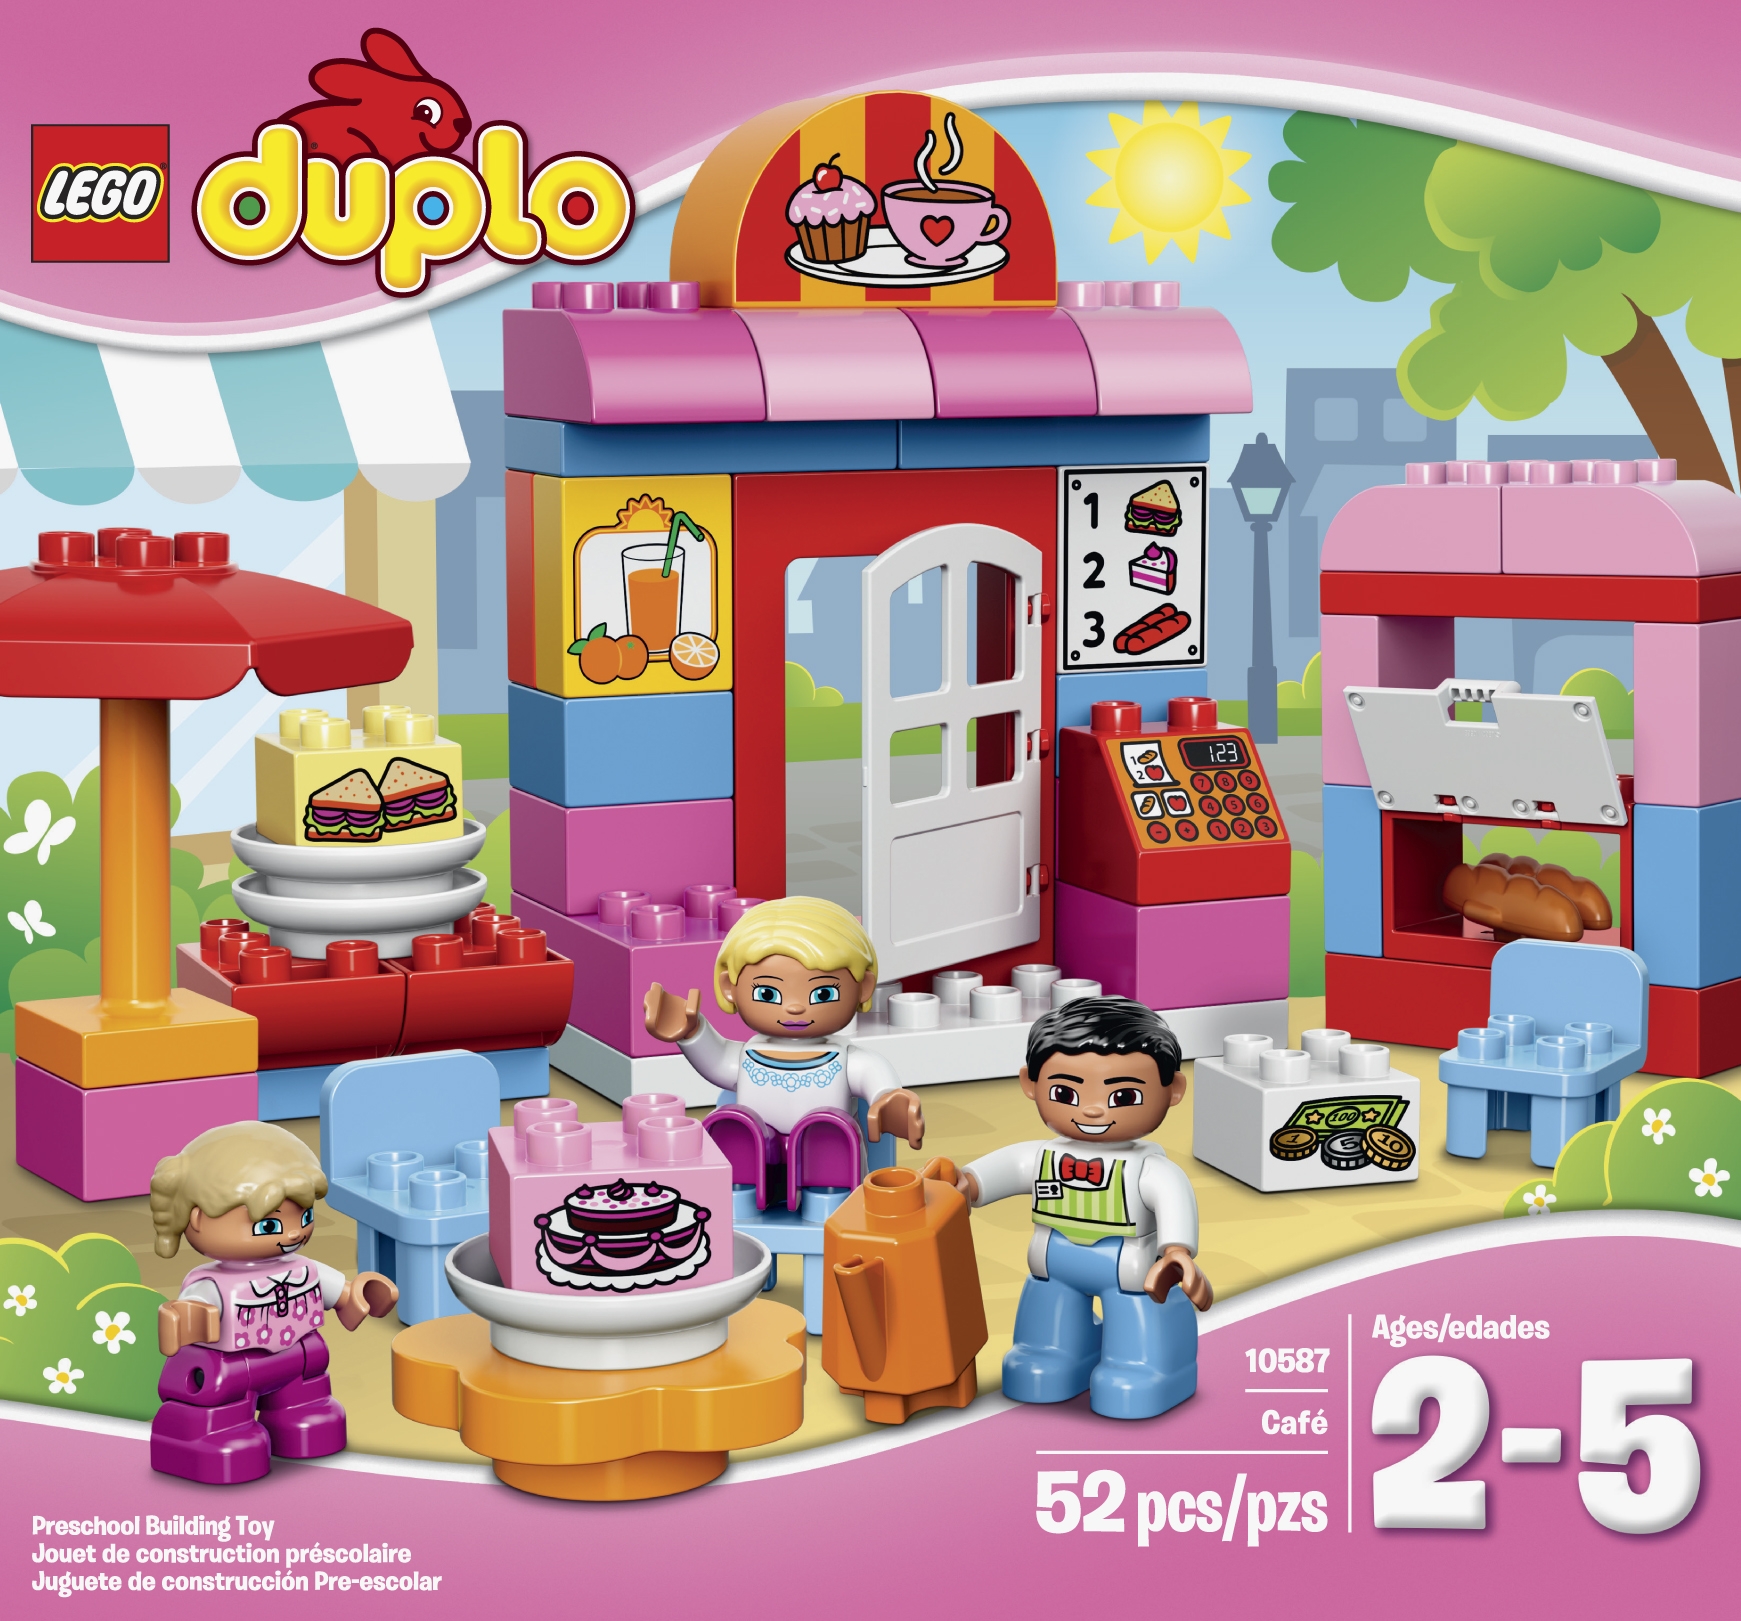 LEGO DUPLO Café Building Set   Toys & Games   Blocks & Building Sets